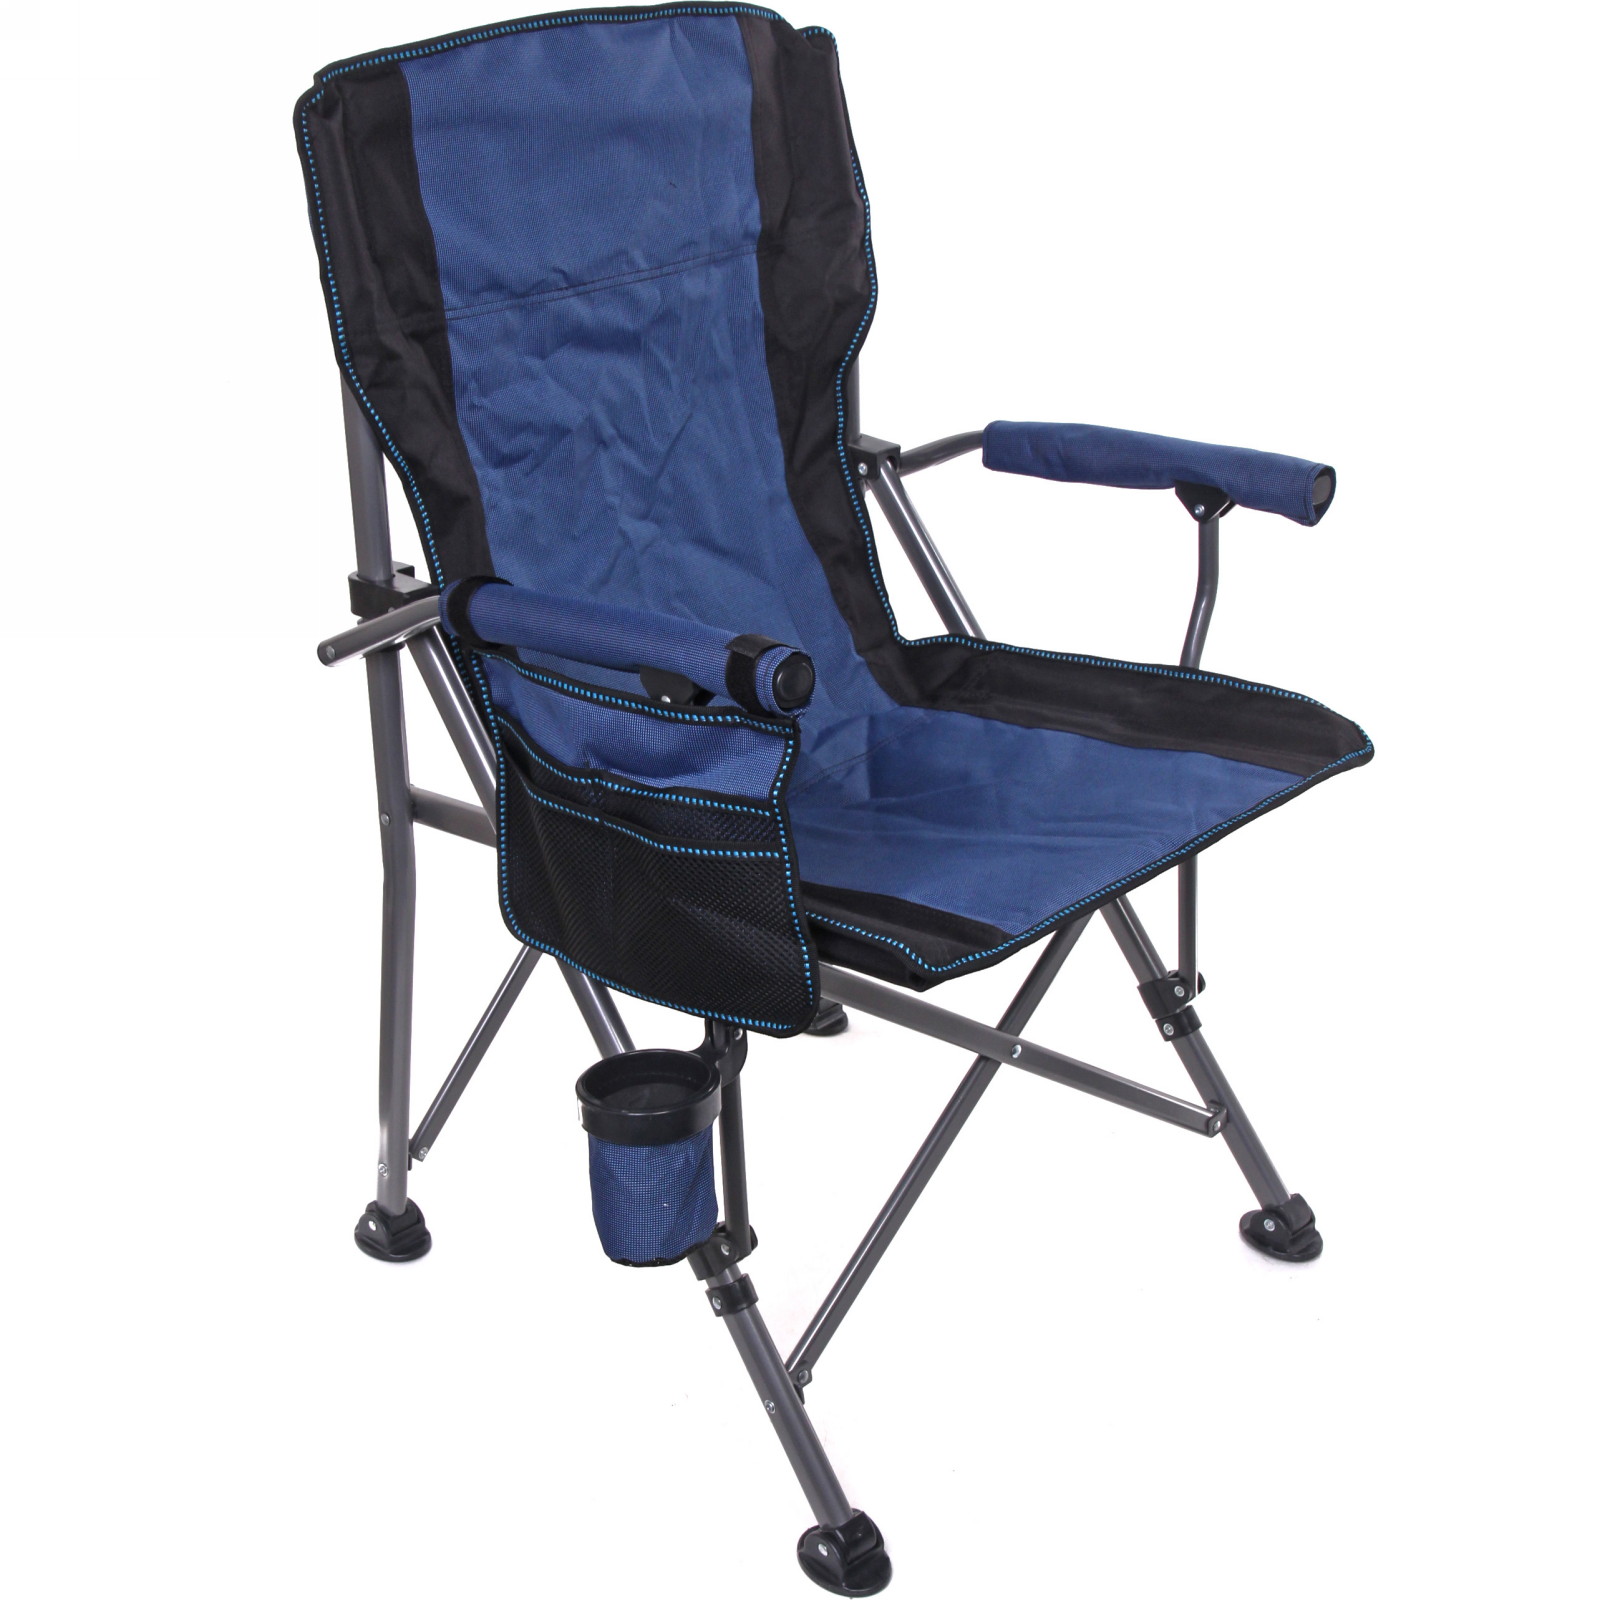 Кресло Турист Мастер складное с подлокотниками до 120кг 64*53*90 см синее